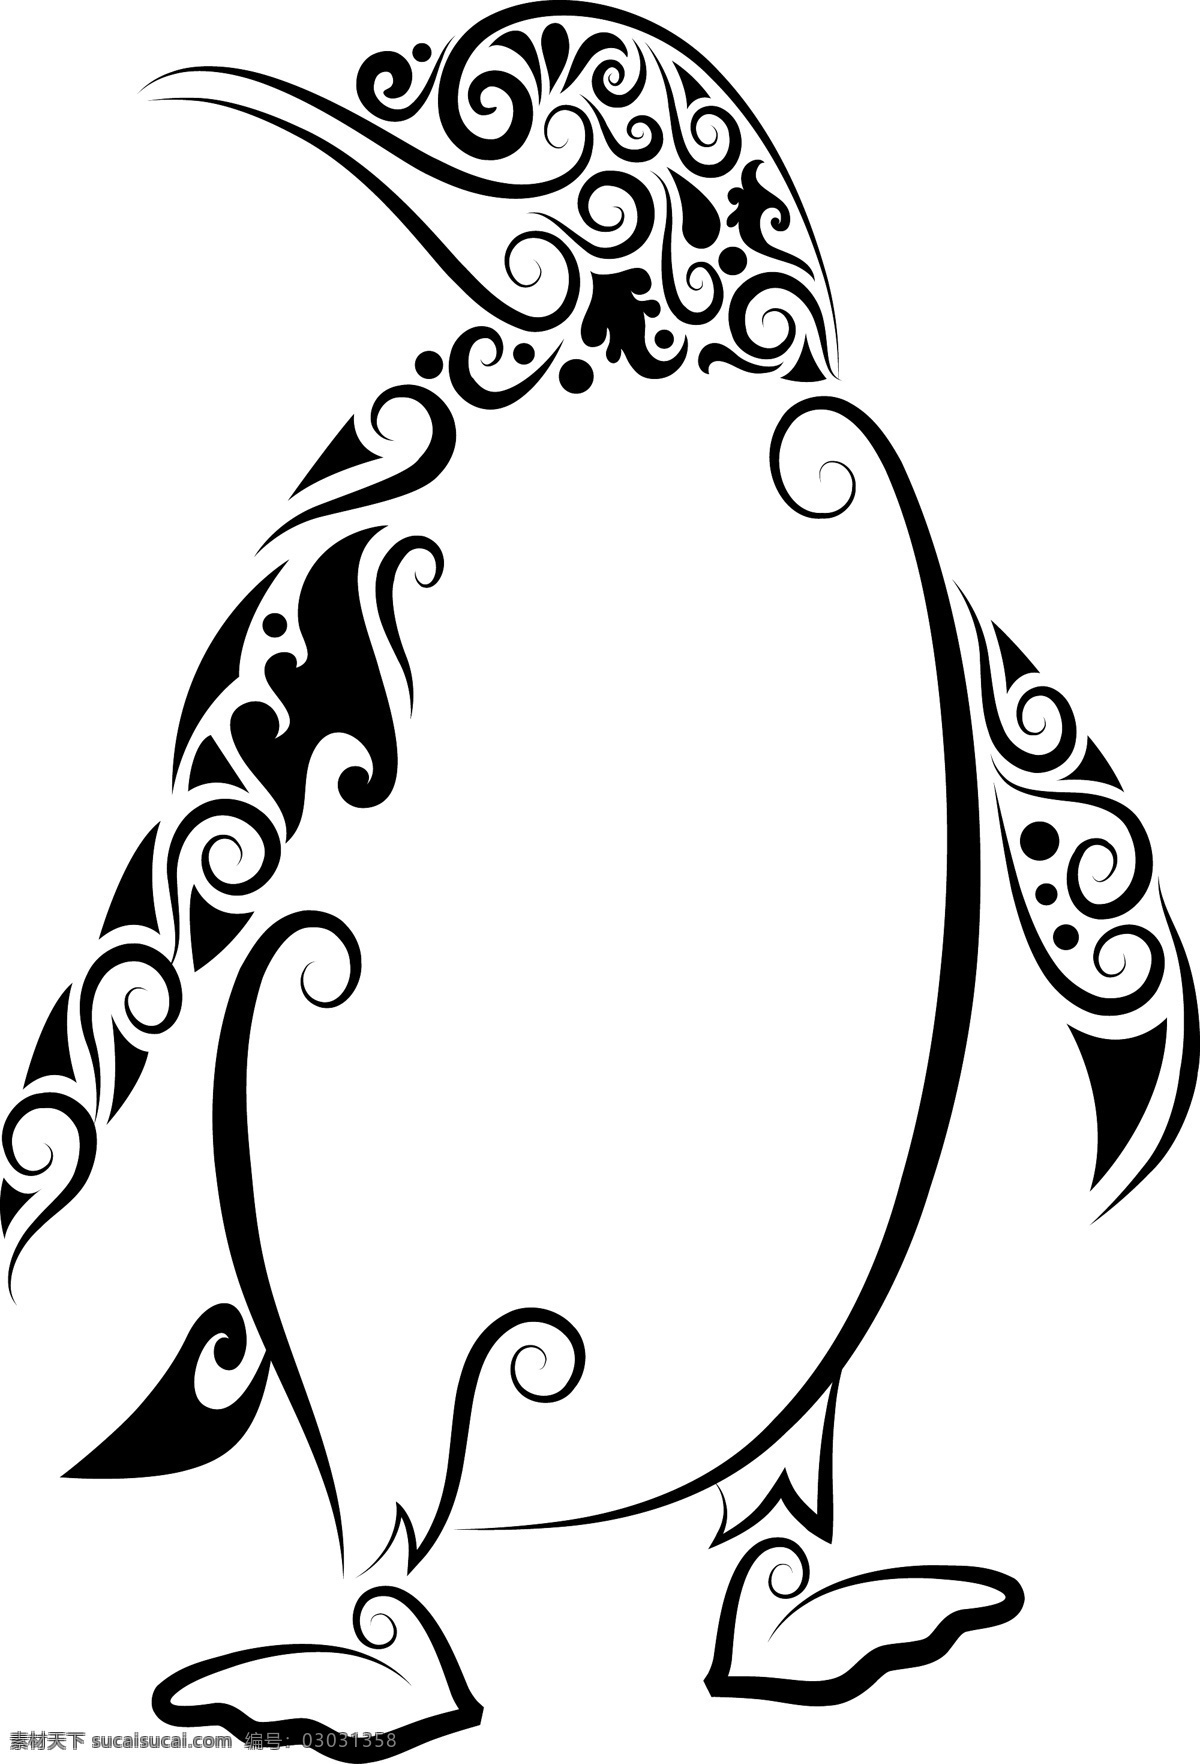 精美 花纹 企鹅 矢量 刺青 动物 剪影 矢量素材 手绘 图案 图形 纹身 线稿 线条 矢量图 其他矢量图